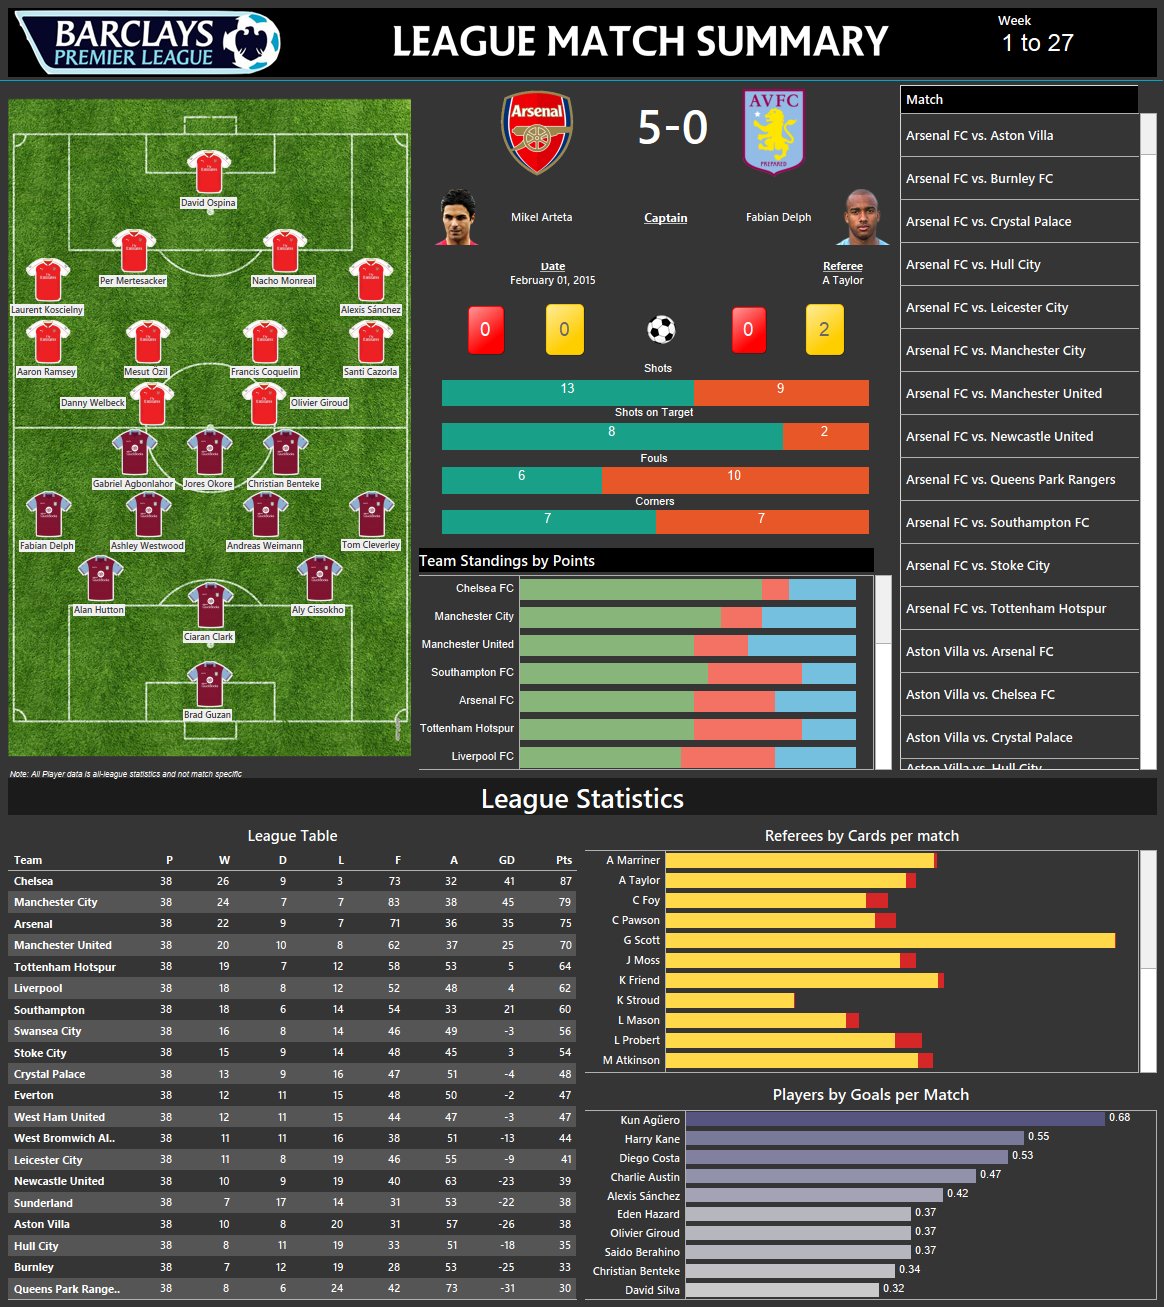 Dashboard - Soccer Stats  Soccer stats, Dashboard, Soccer